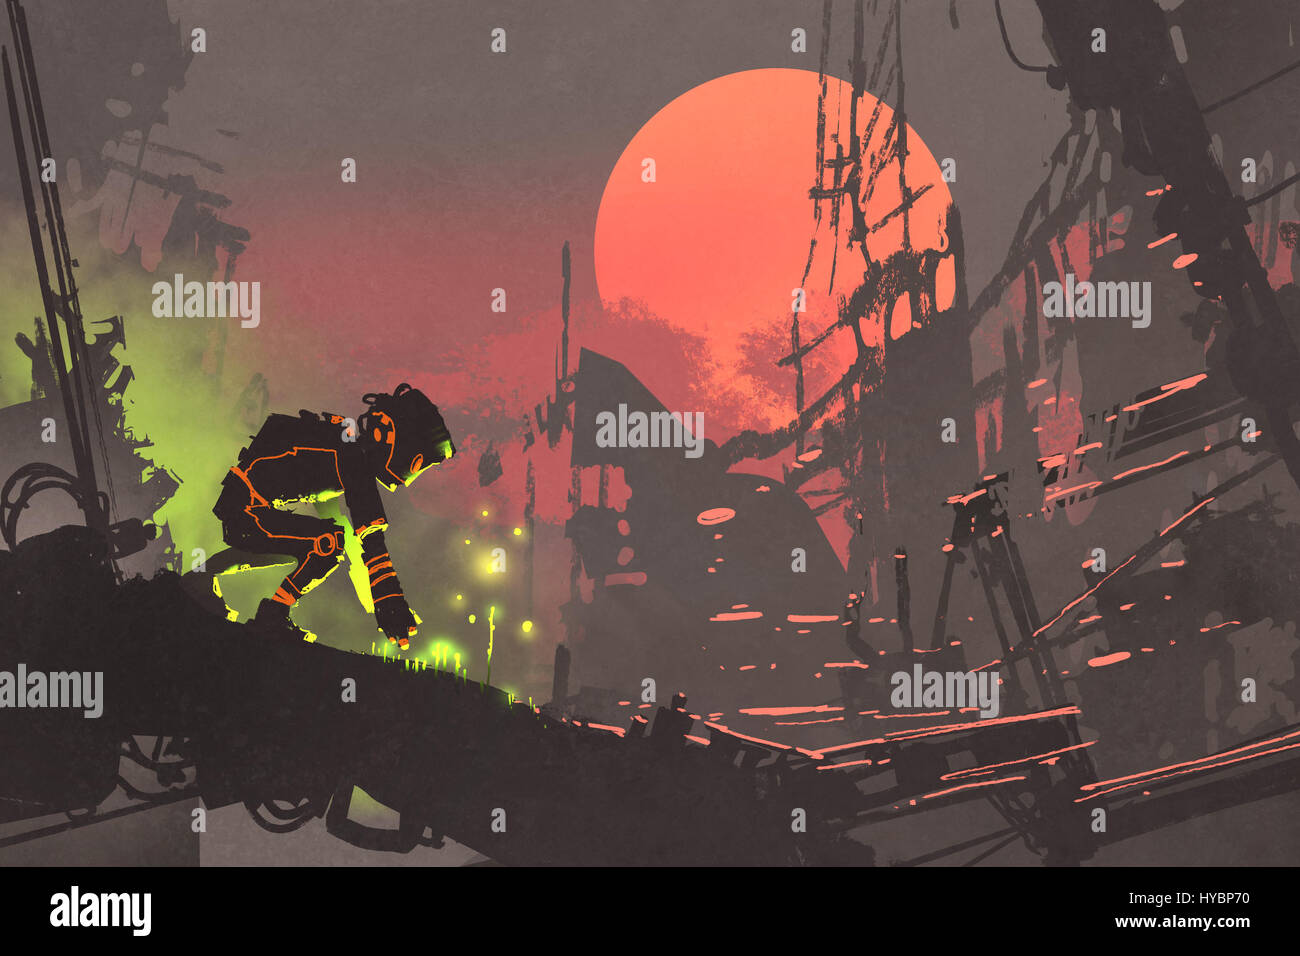 der Roboter die Saat in die Ruinenstadt bei Sonnenuntergang, Illustration Malerei Stockfoto